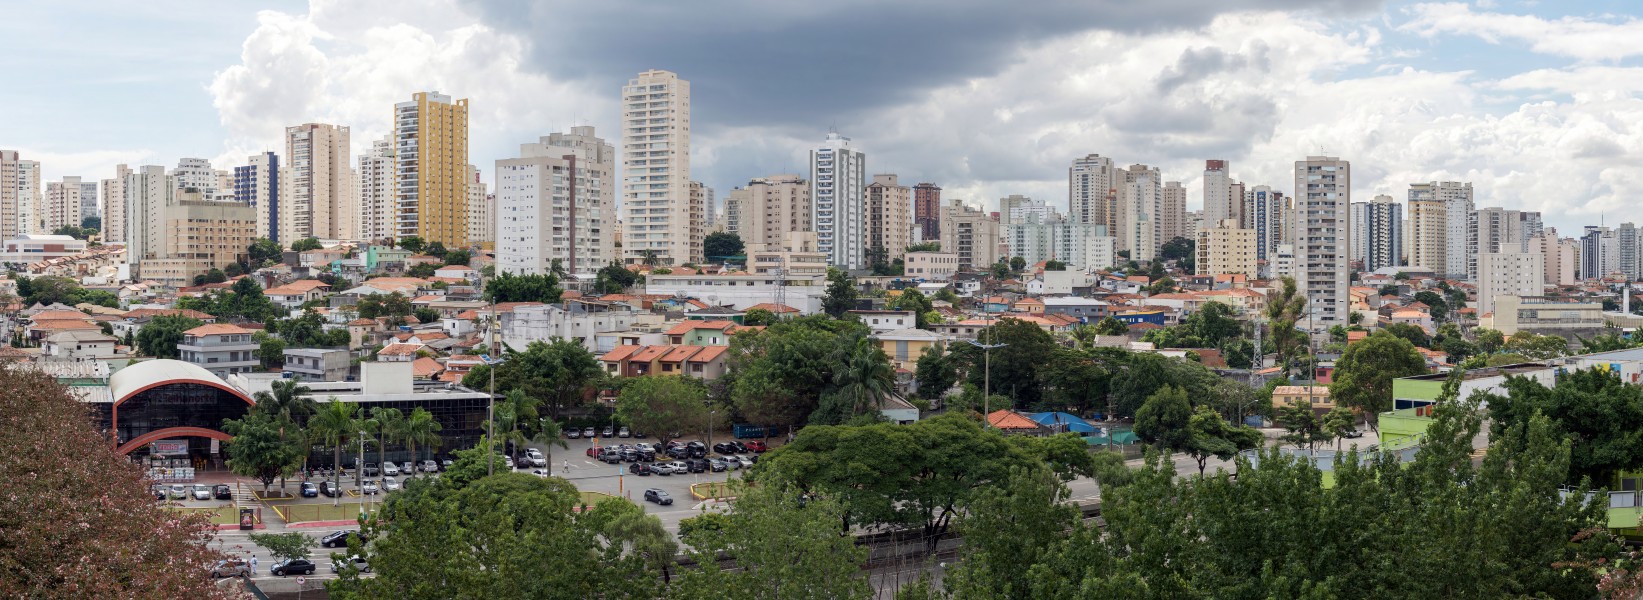 Panoramic view of Saúde, São Paulo city, Brazil